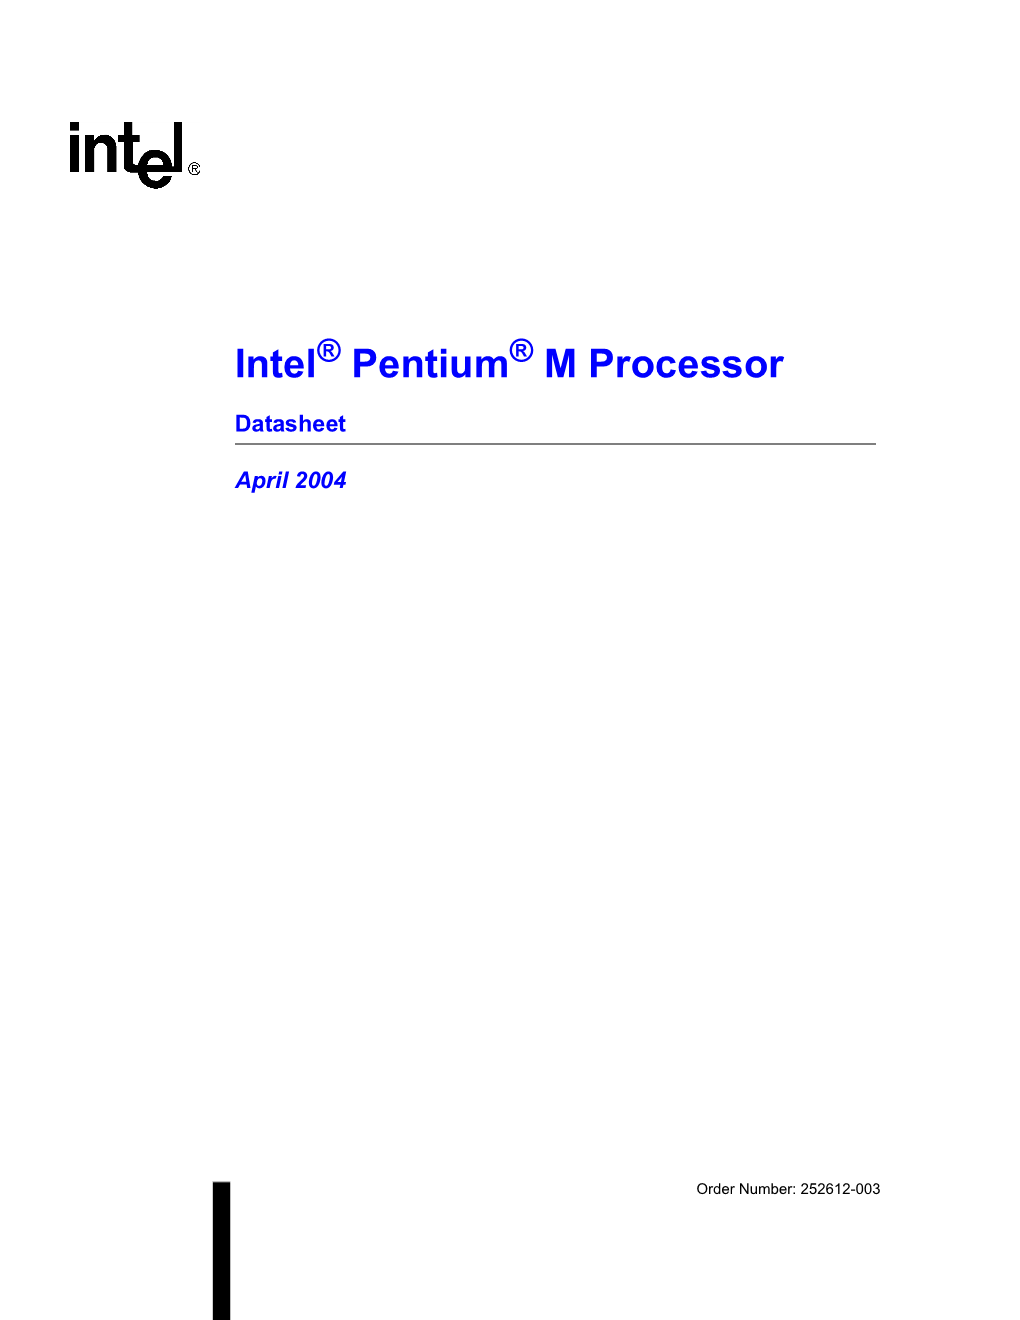 Intel Pentium M Processor Die Offset